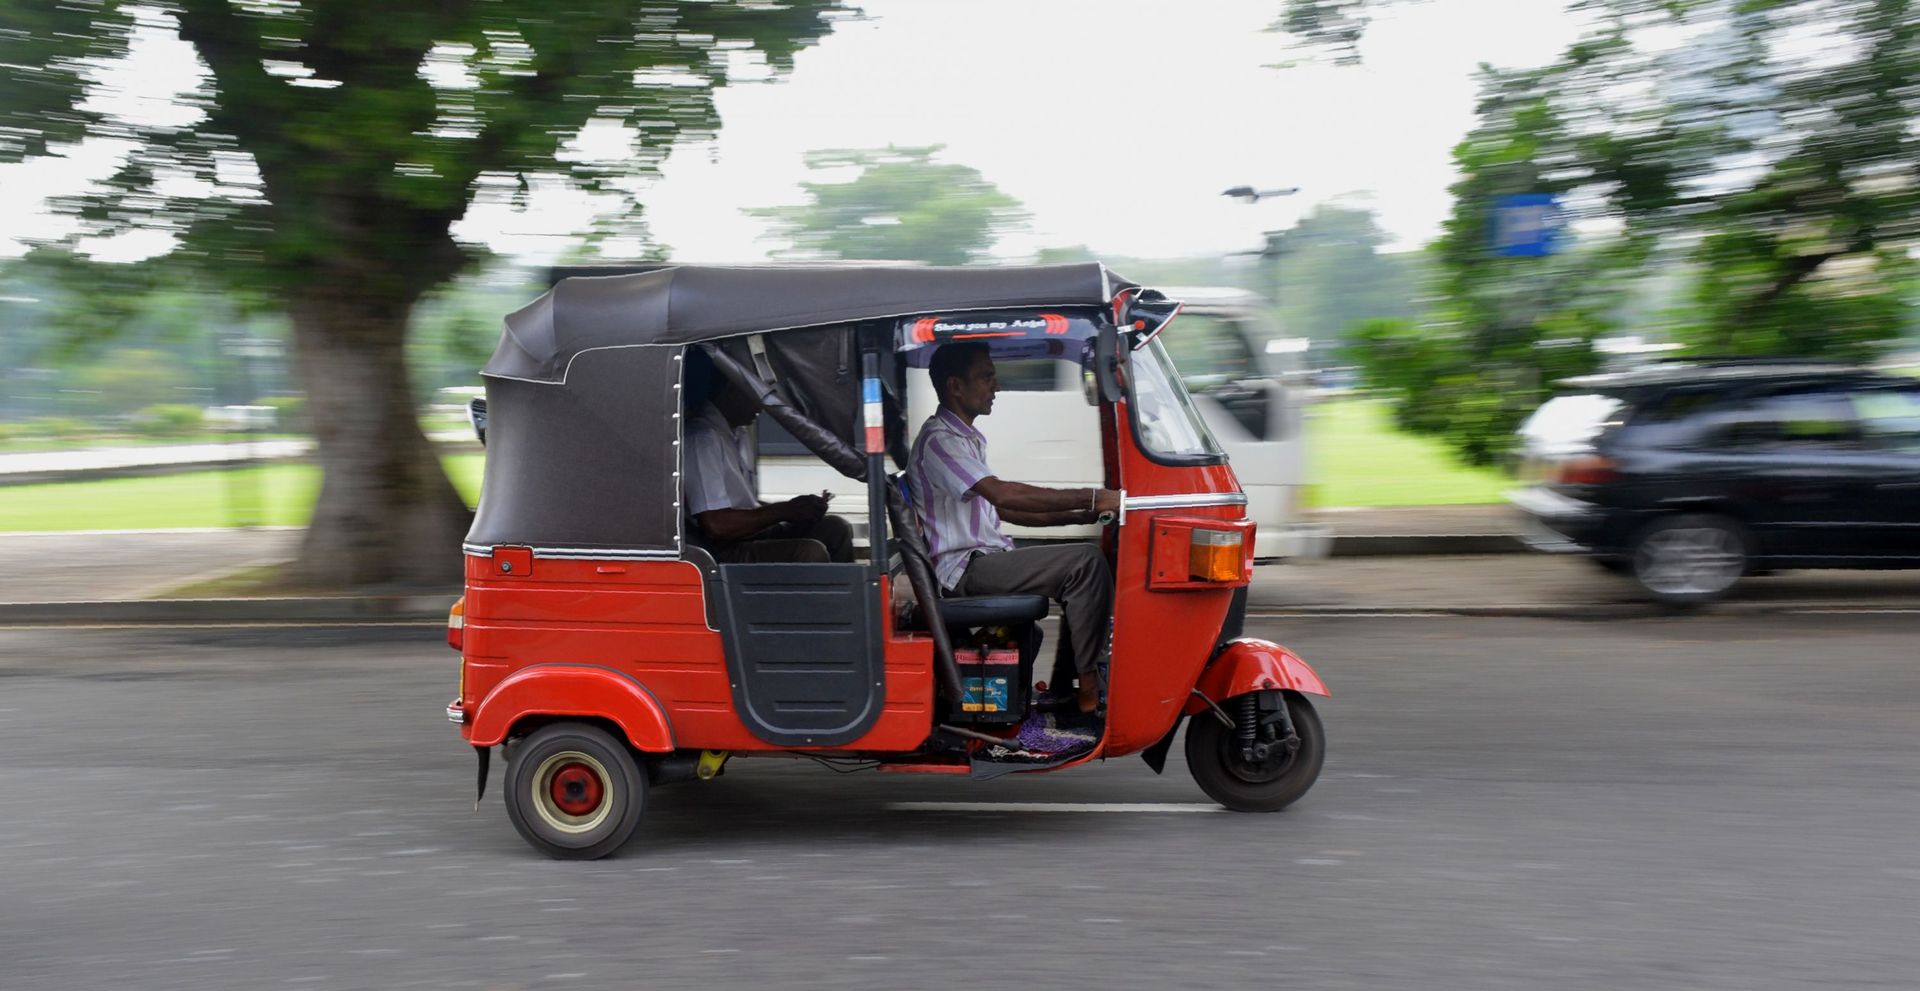 Un homme srilankais conduit un taxi à trois roues, appelé tuk-tuk, dans la ville de Colombo